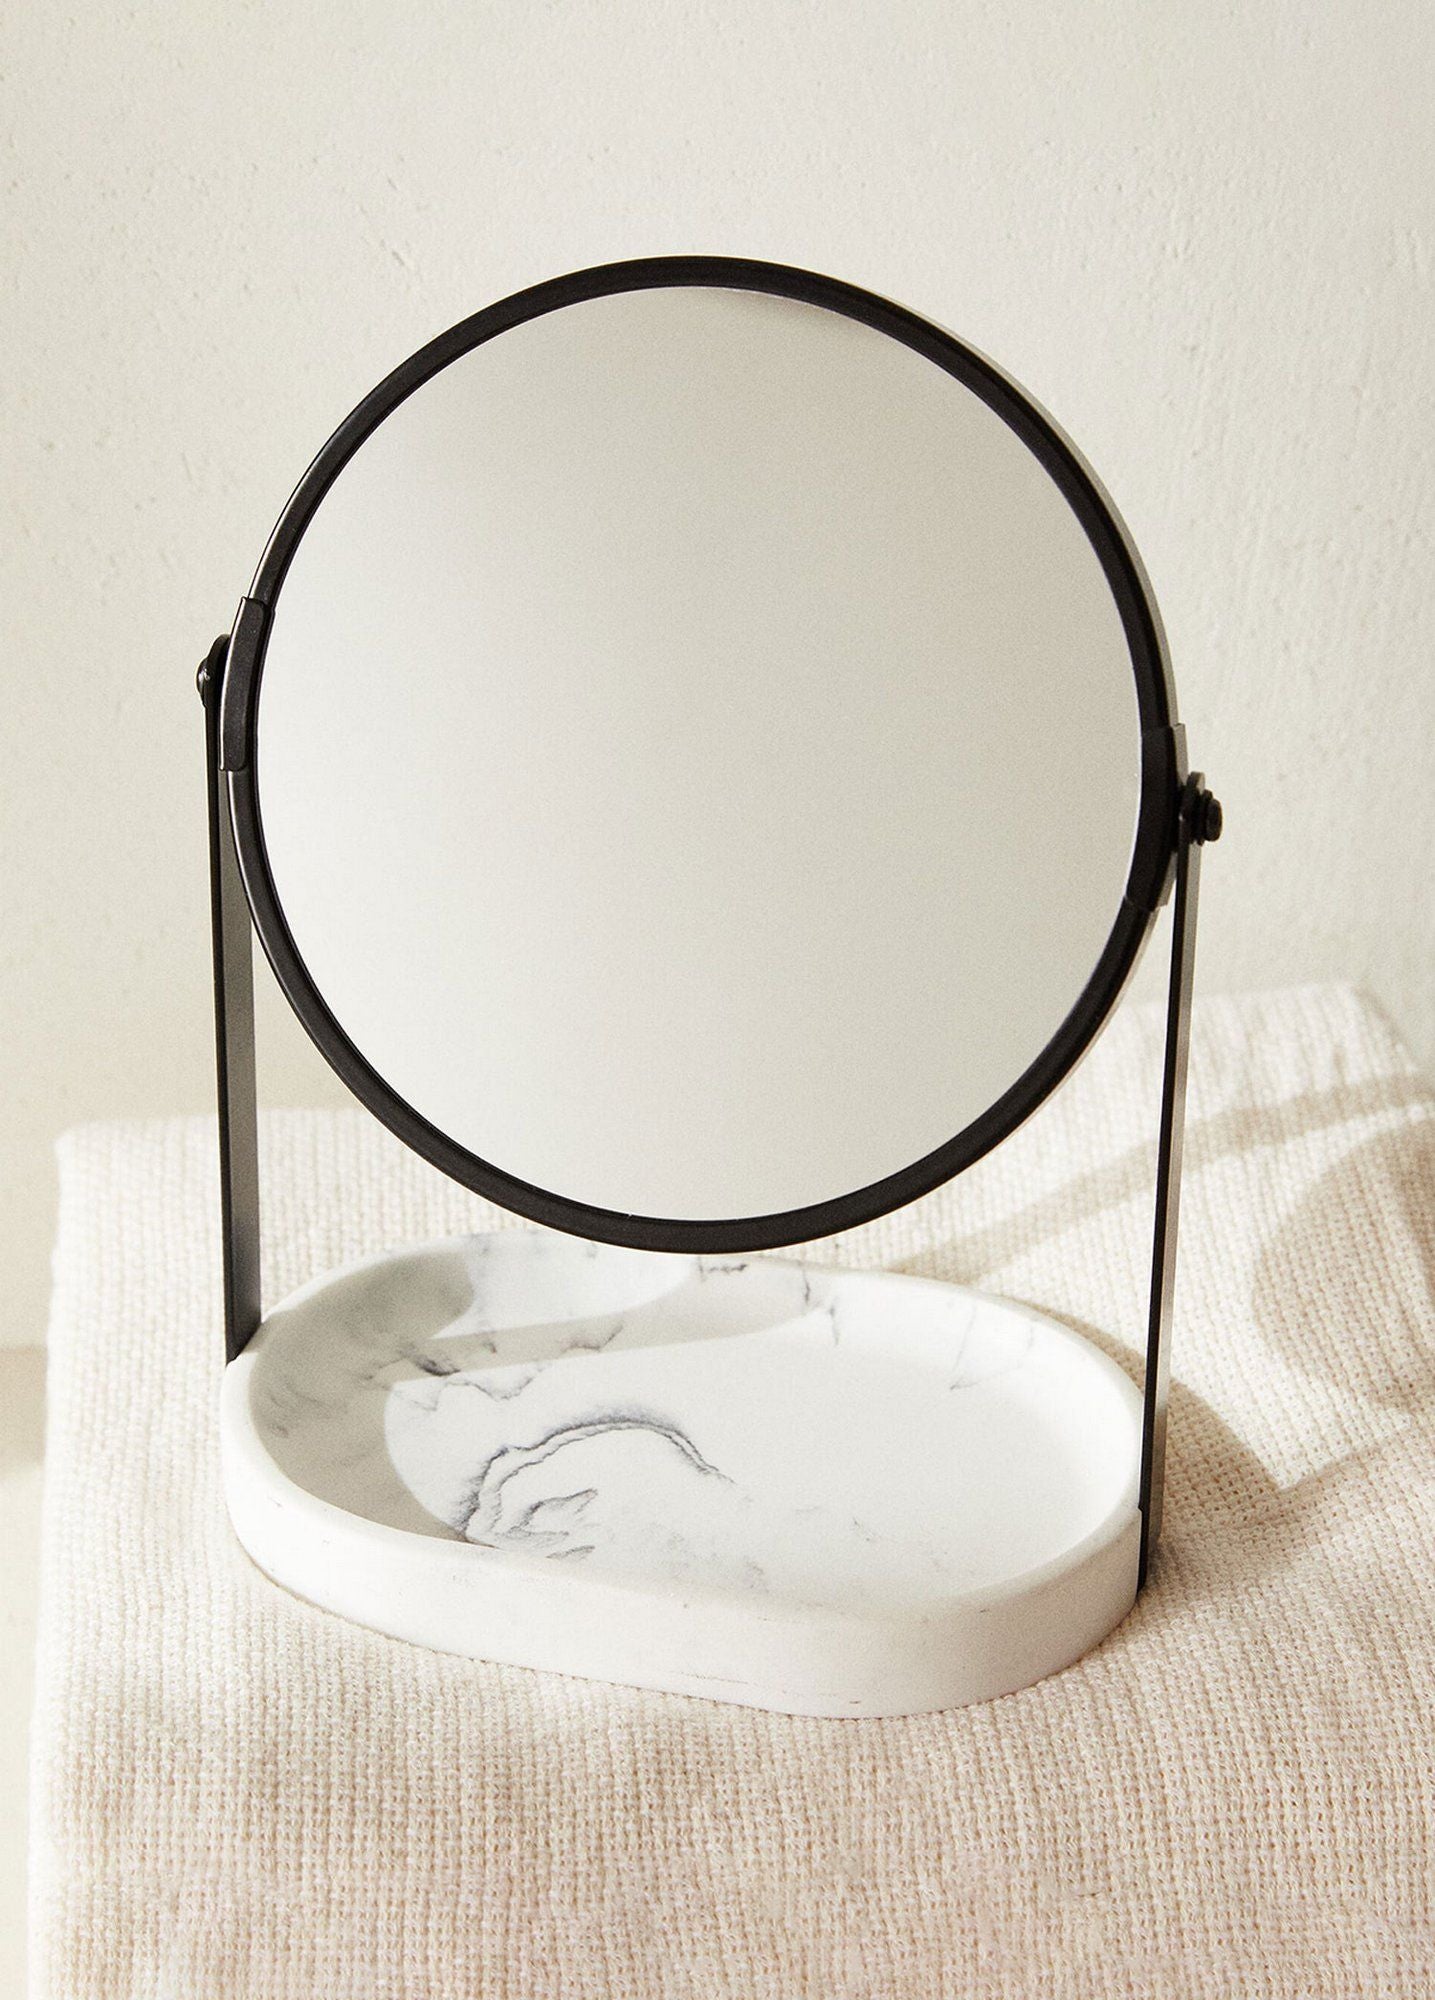 Dekorativt Make-up spejl